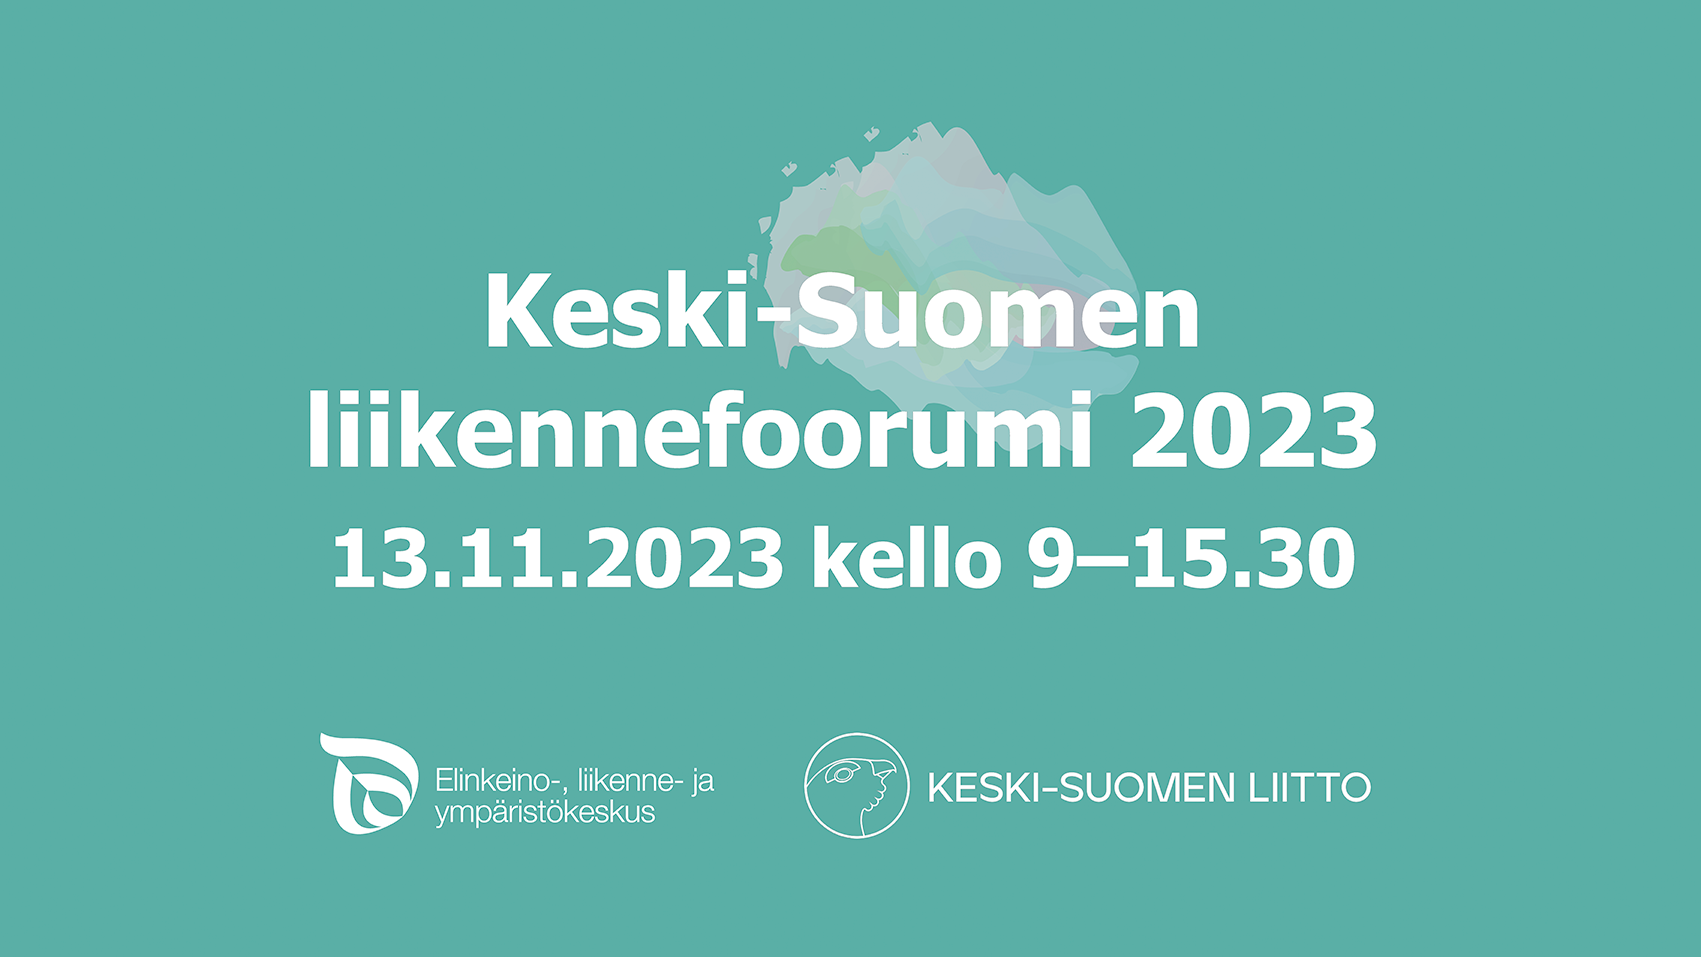 Keski-Suomen liikennefoorumi 13.11.2023 -bannerikuva